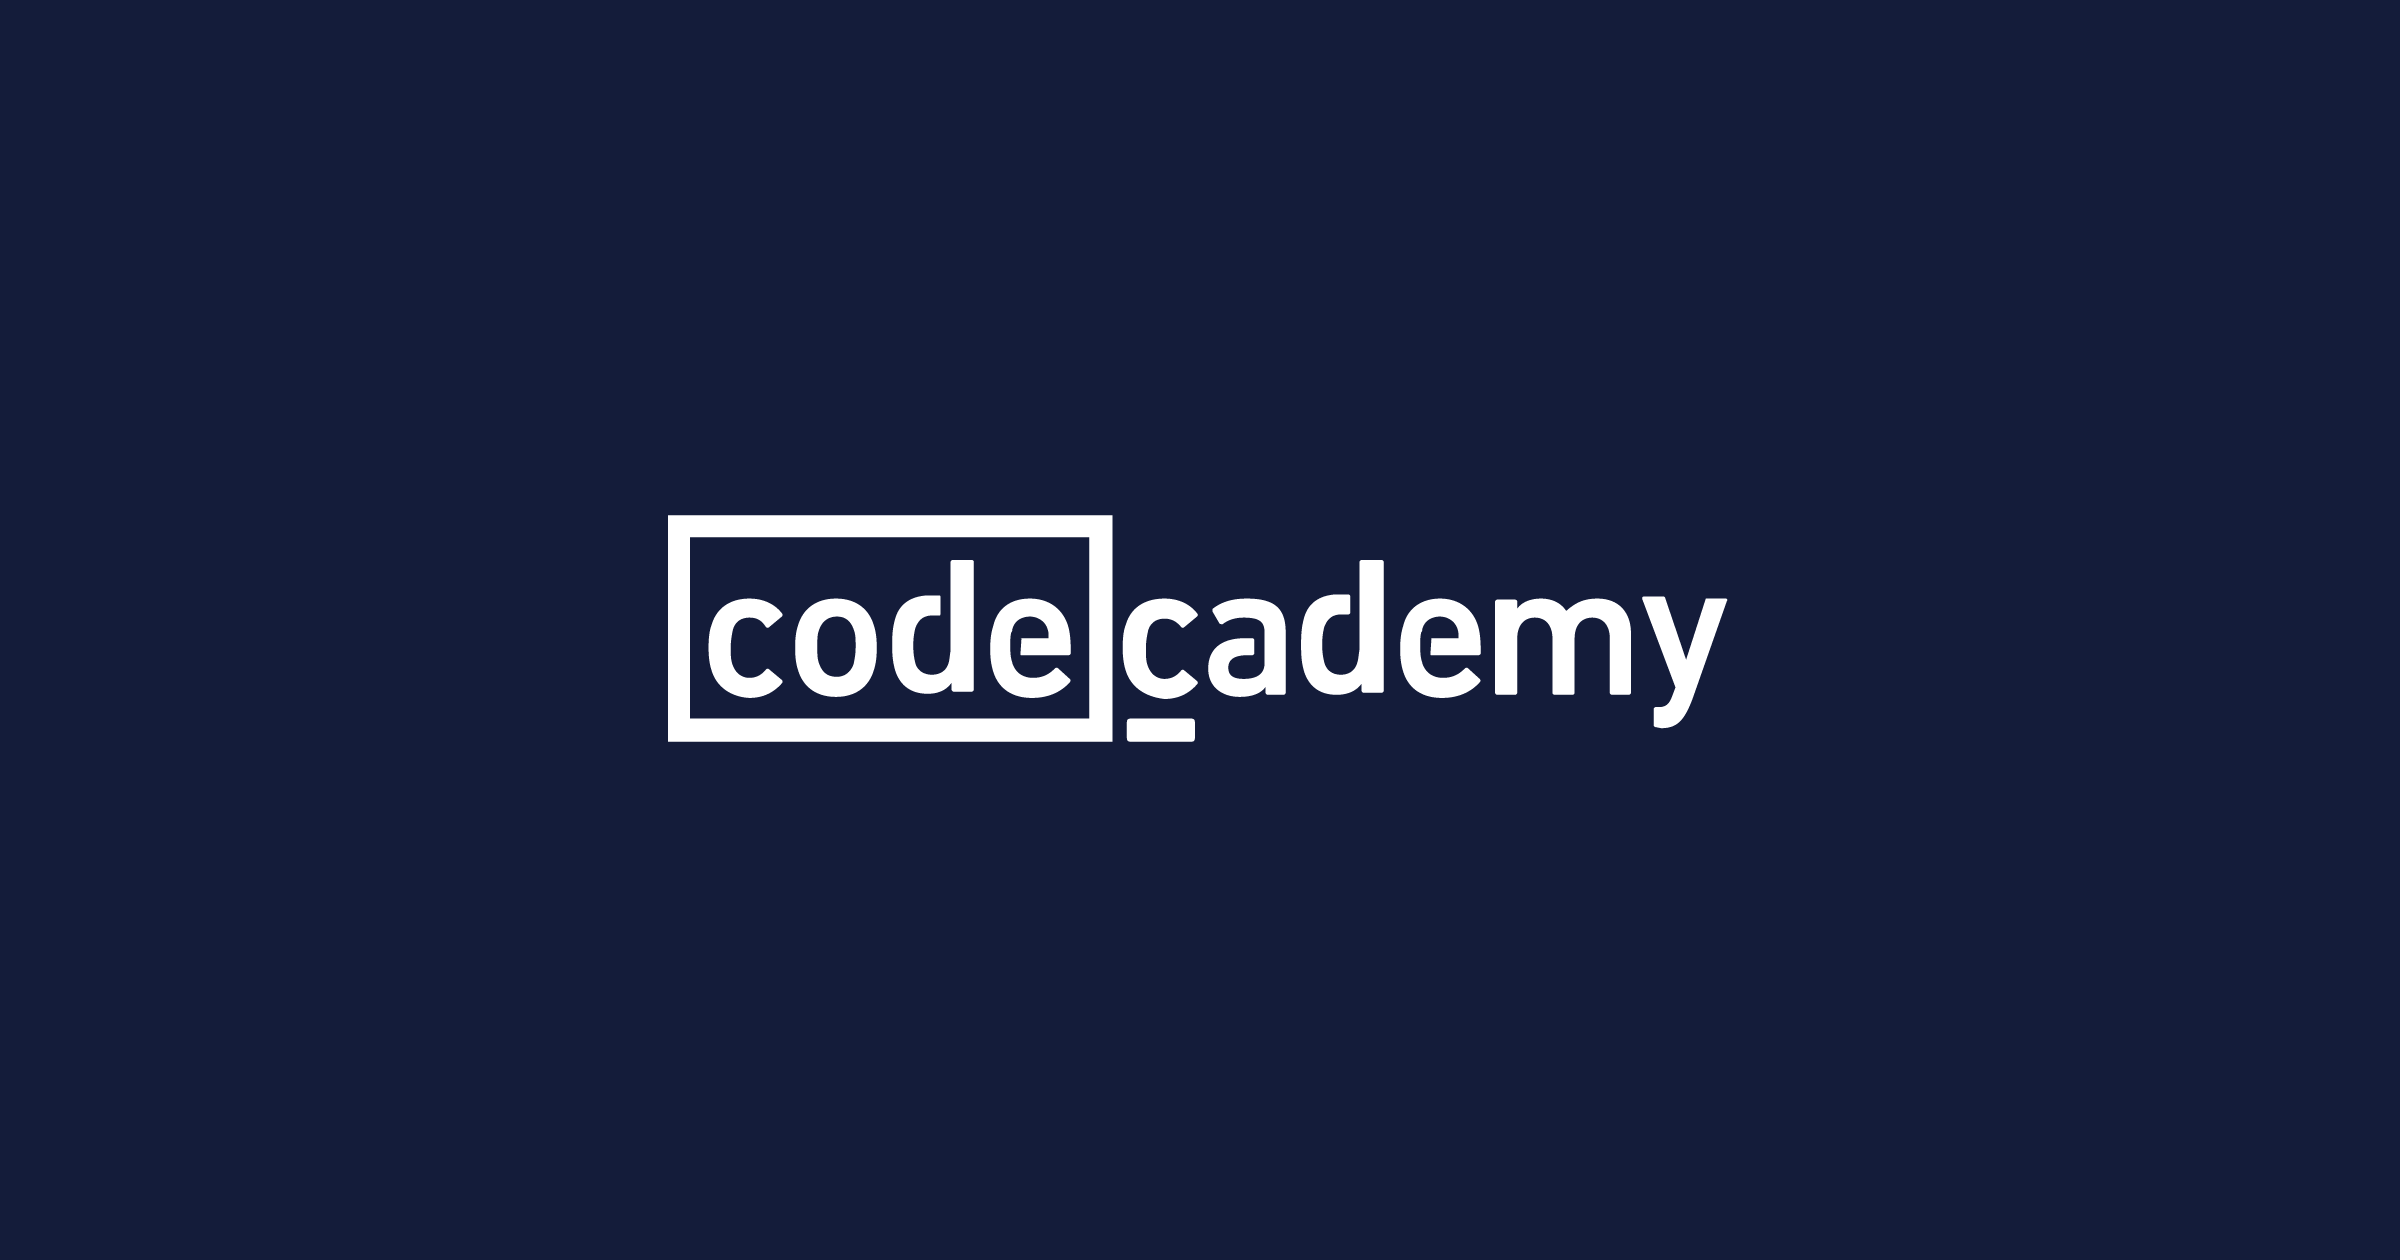 www.codecademy.com